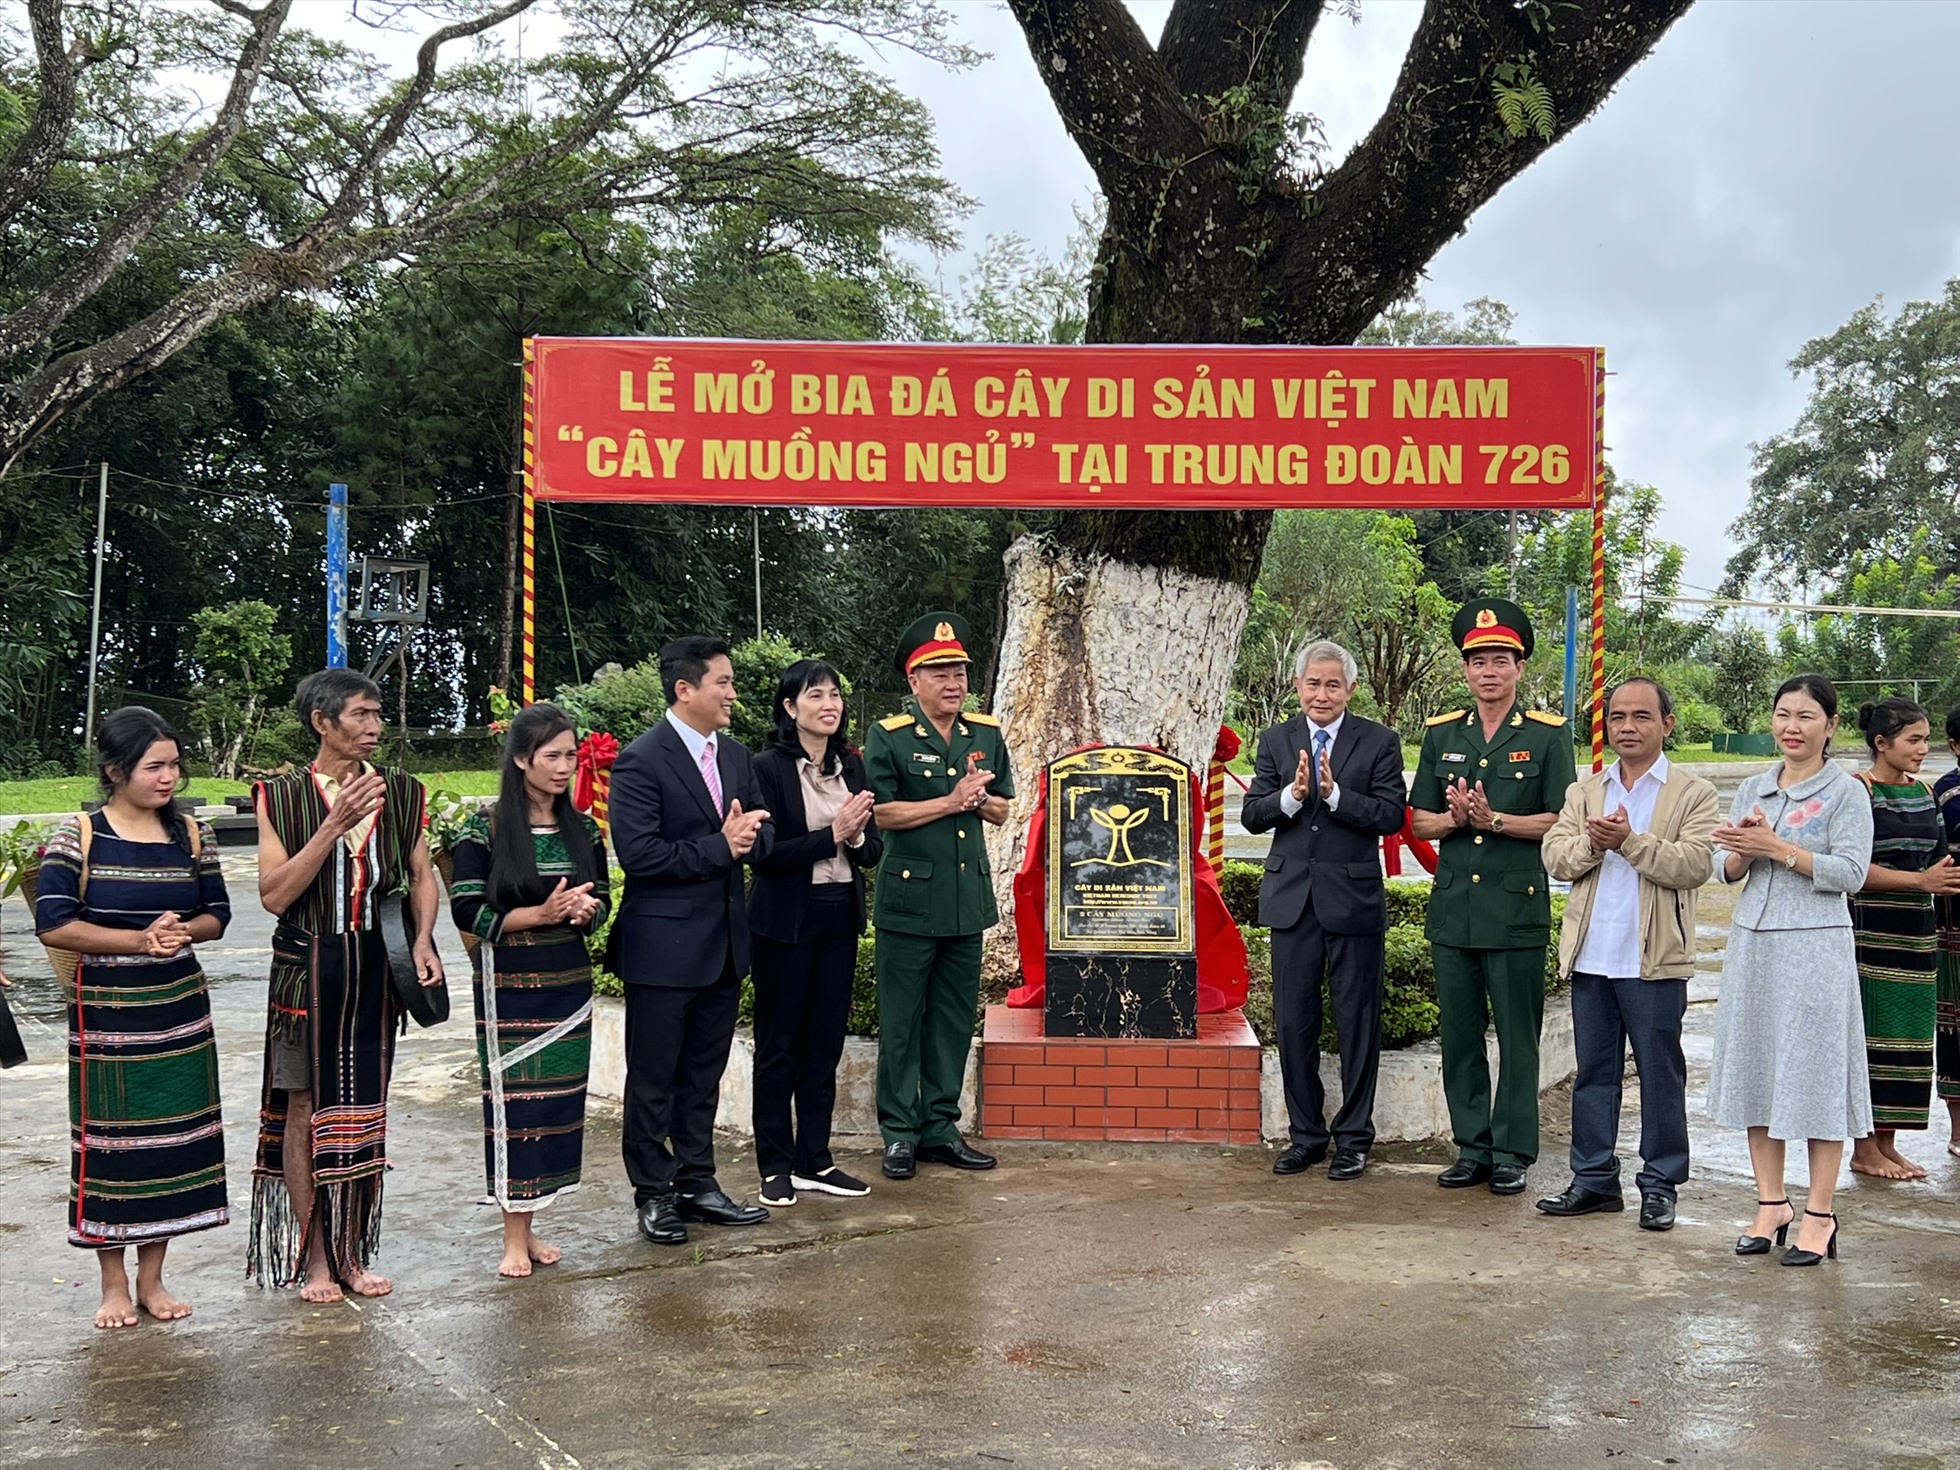 Các cơ quan chức năng tổ chức “Lễ đón Bằng công nhận Cây di sản Việt Nam”. Ảnh: Hồng Thắm